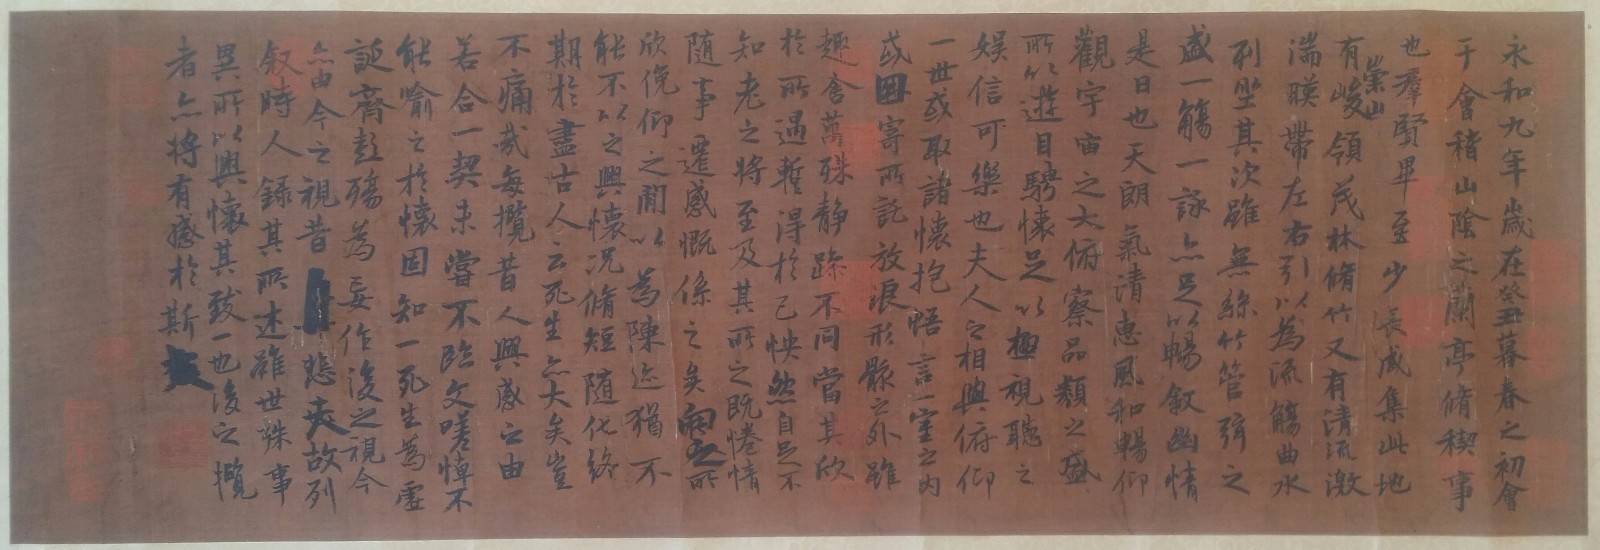 王羲之书法墨迹《兰亭序》在兰州被发现